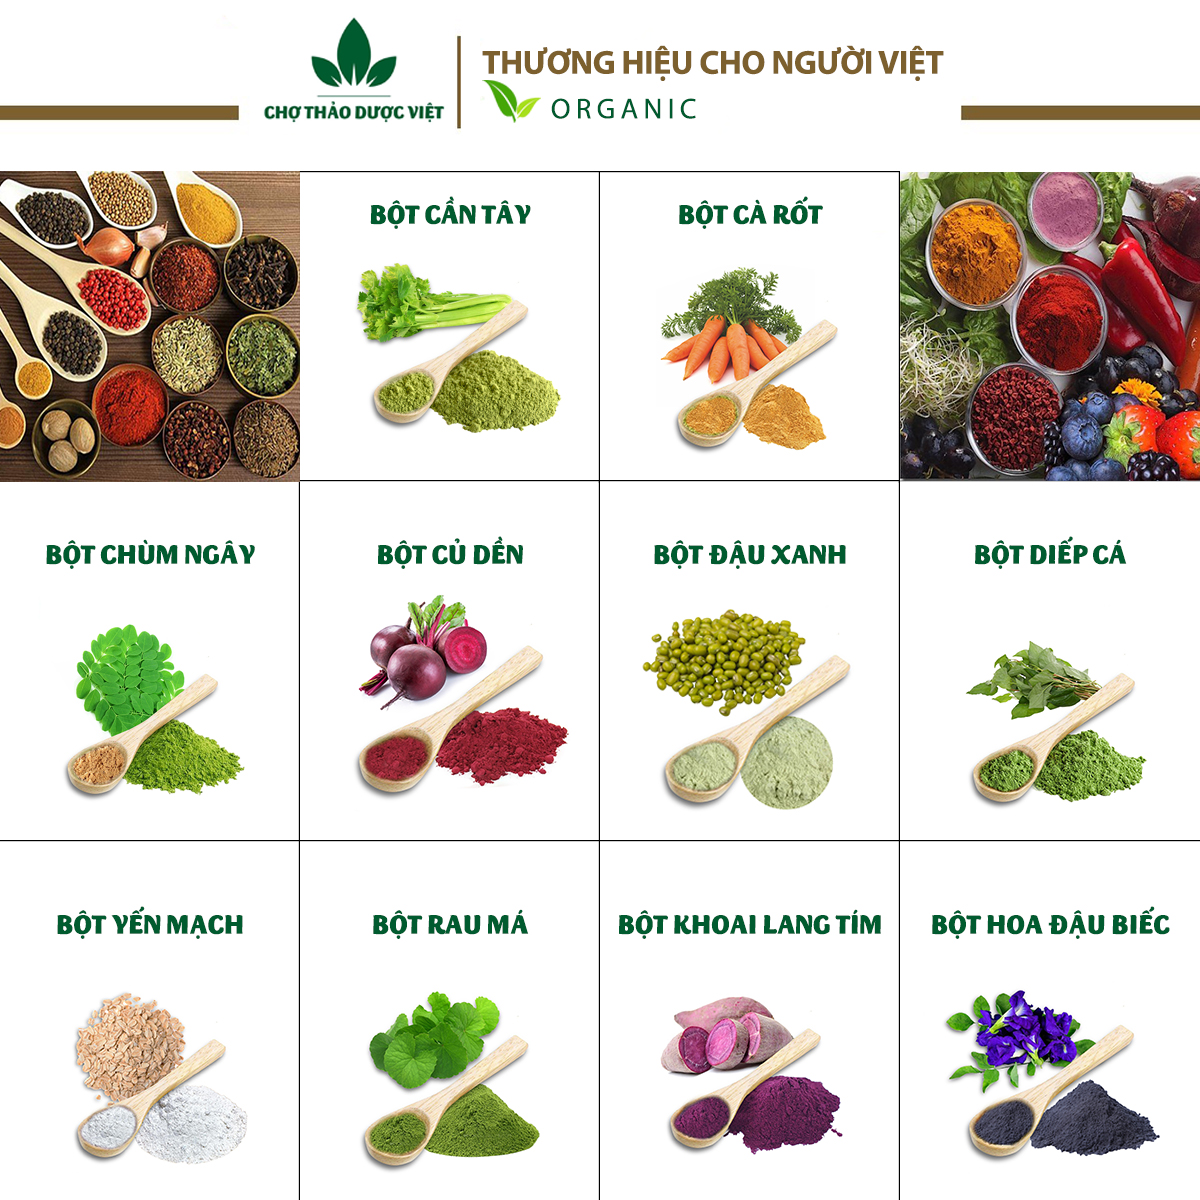 Set 10 loại bột ăn dặm dinh dưỡng hữu cơ (Bột nấu cháo, tạo màu, hương vị cho món ăn)  - Chợ Thảo Dược Việt